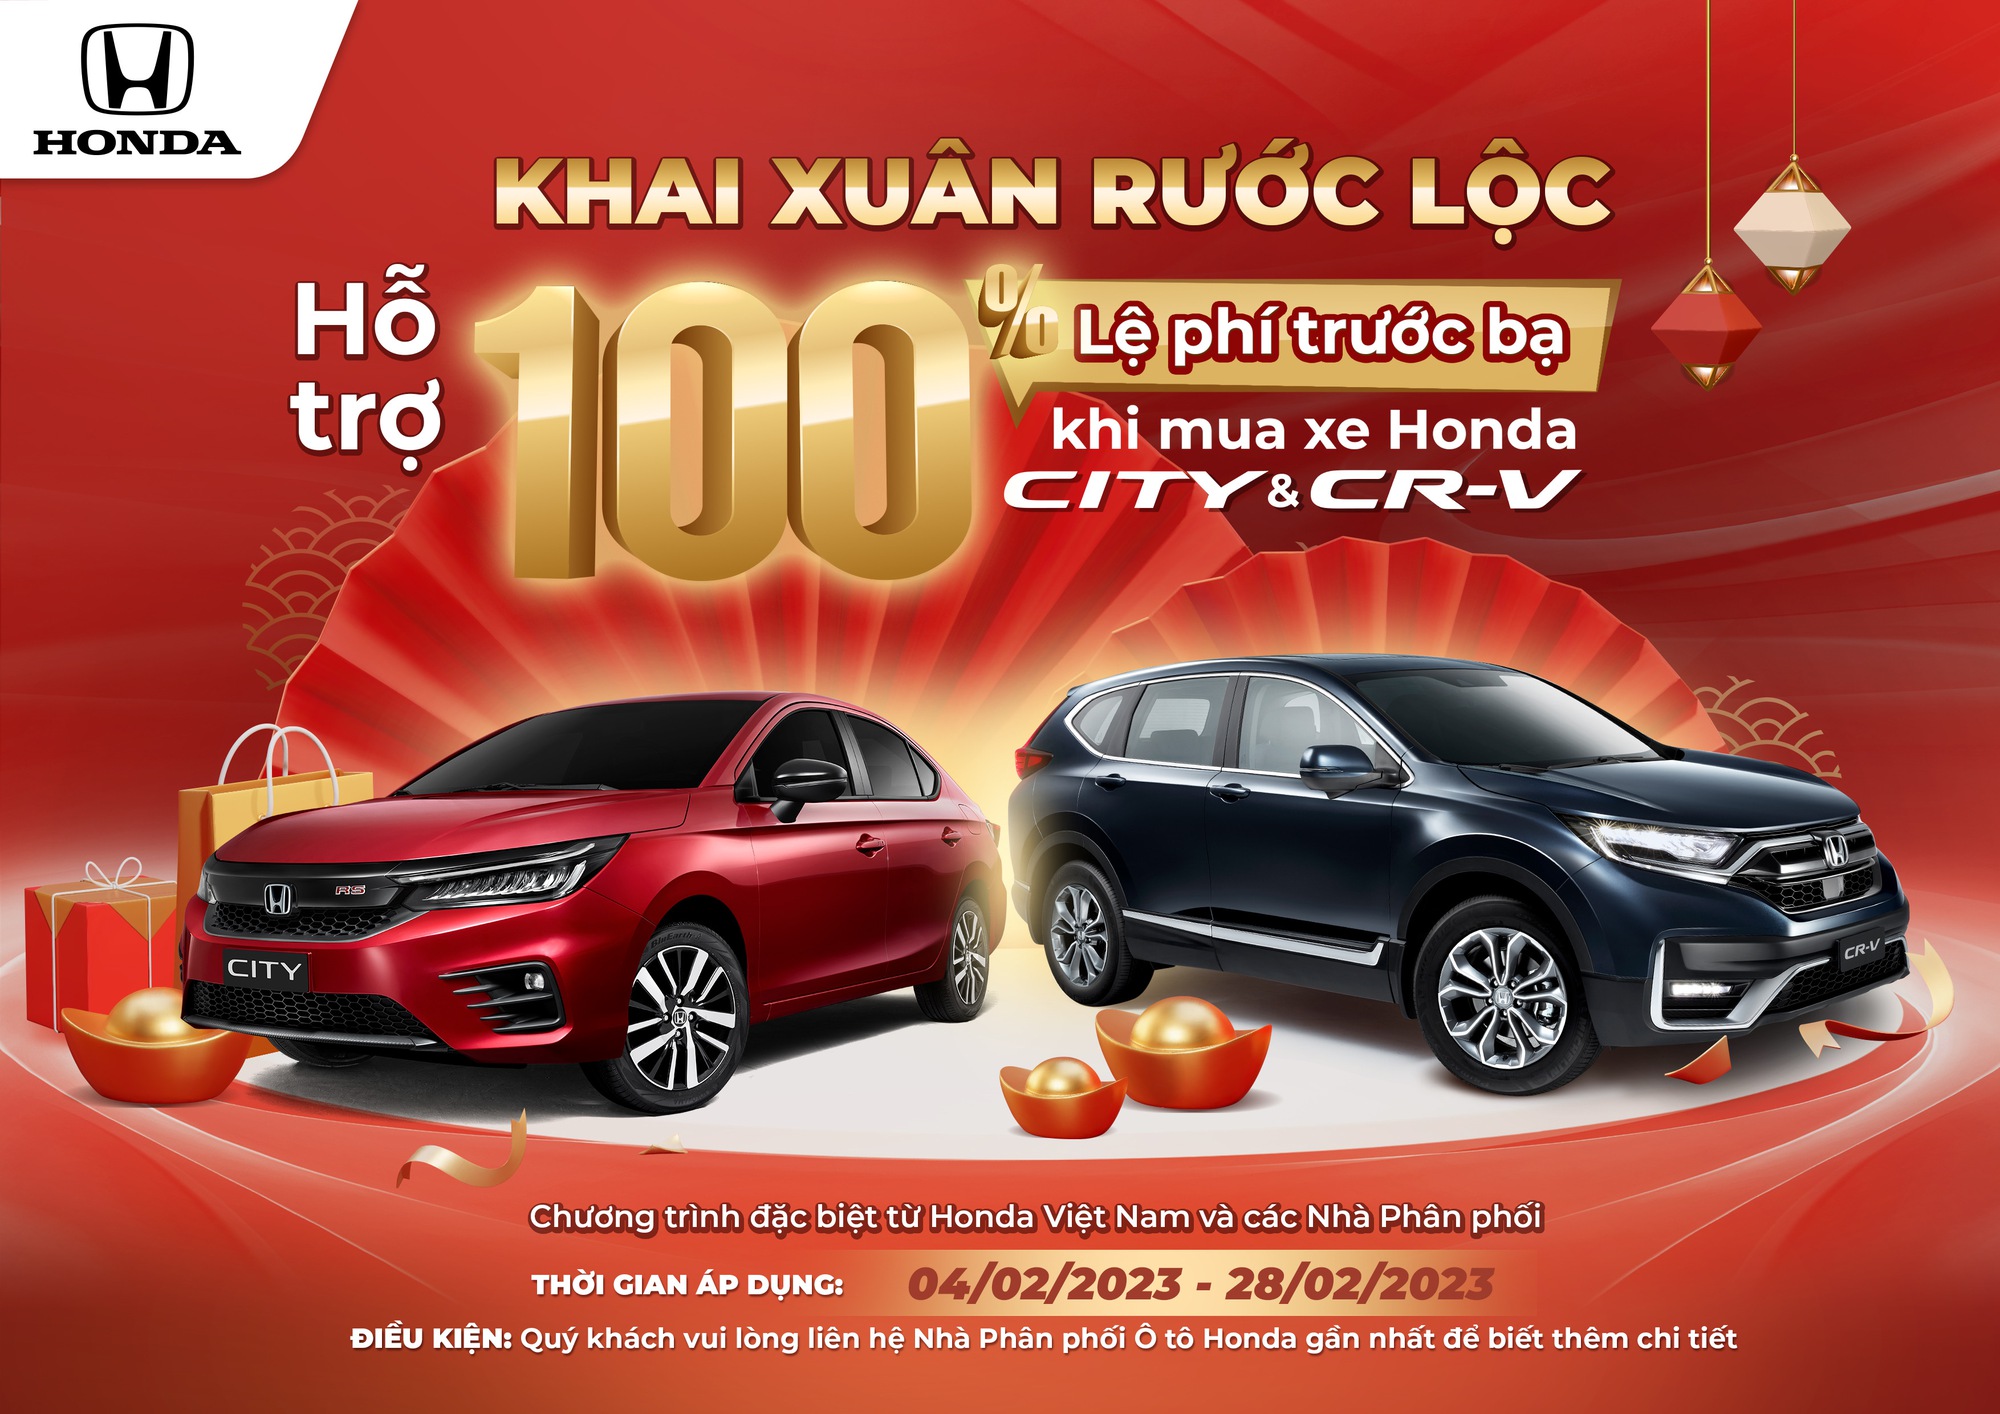 Thiếu chip khiến doanh số xe máy và ôtô của Honda Việt Nam giảm mạnh   Doanh nghiệp  Vietnam VietnamPlus